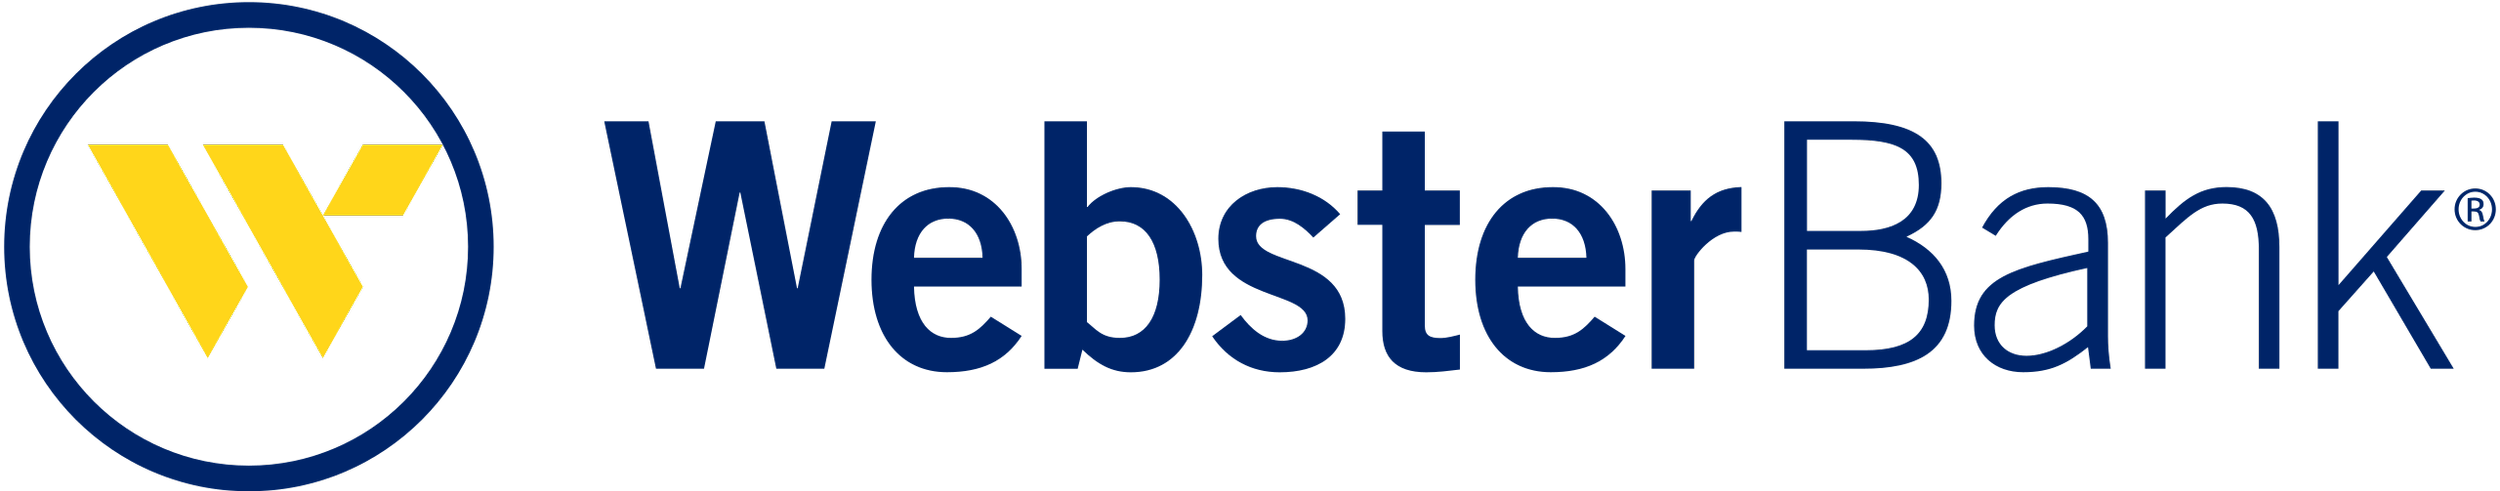 Webster_Bank_logo.png